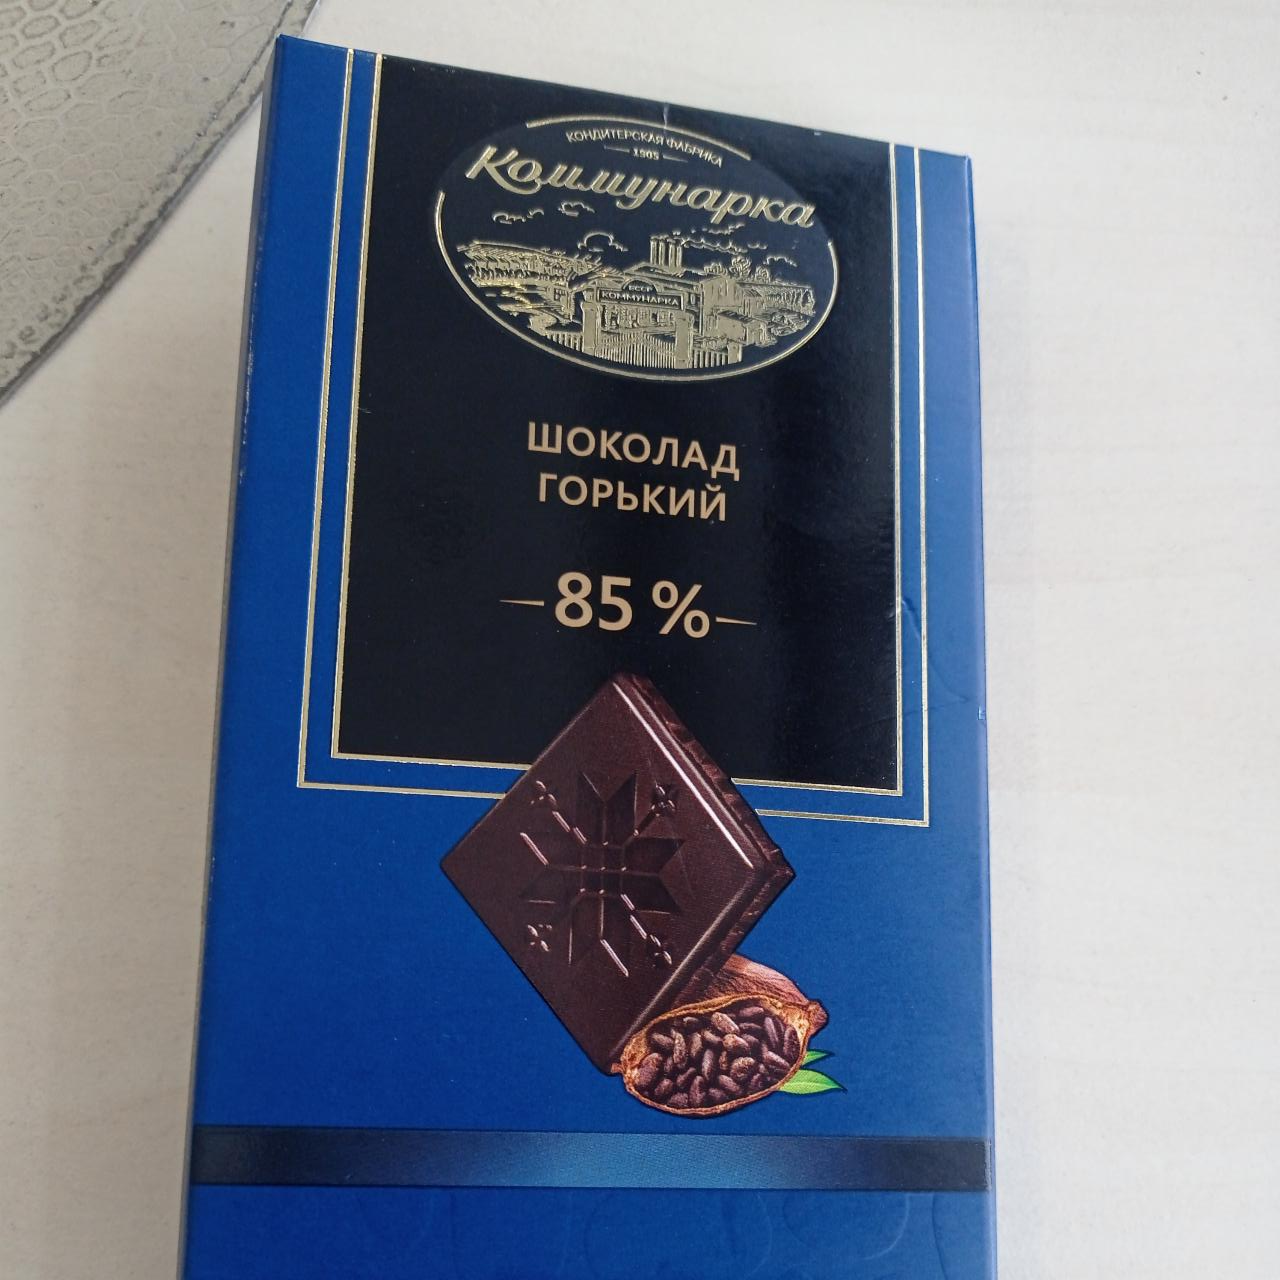 Фото - Шоколад горький десертный 85% Коммунарка